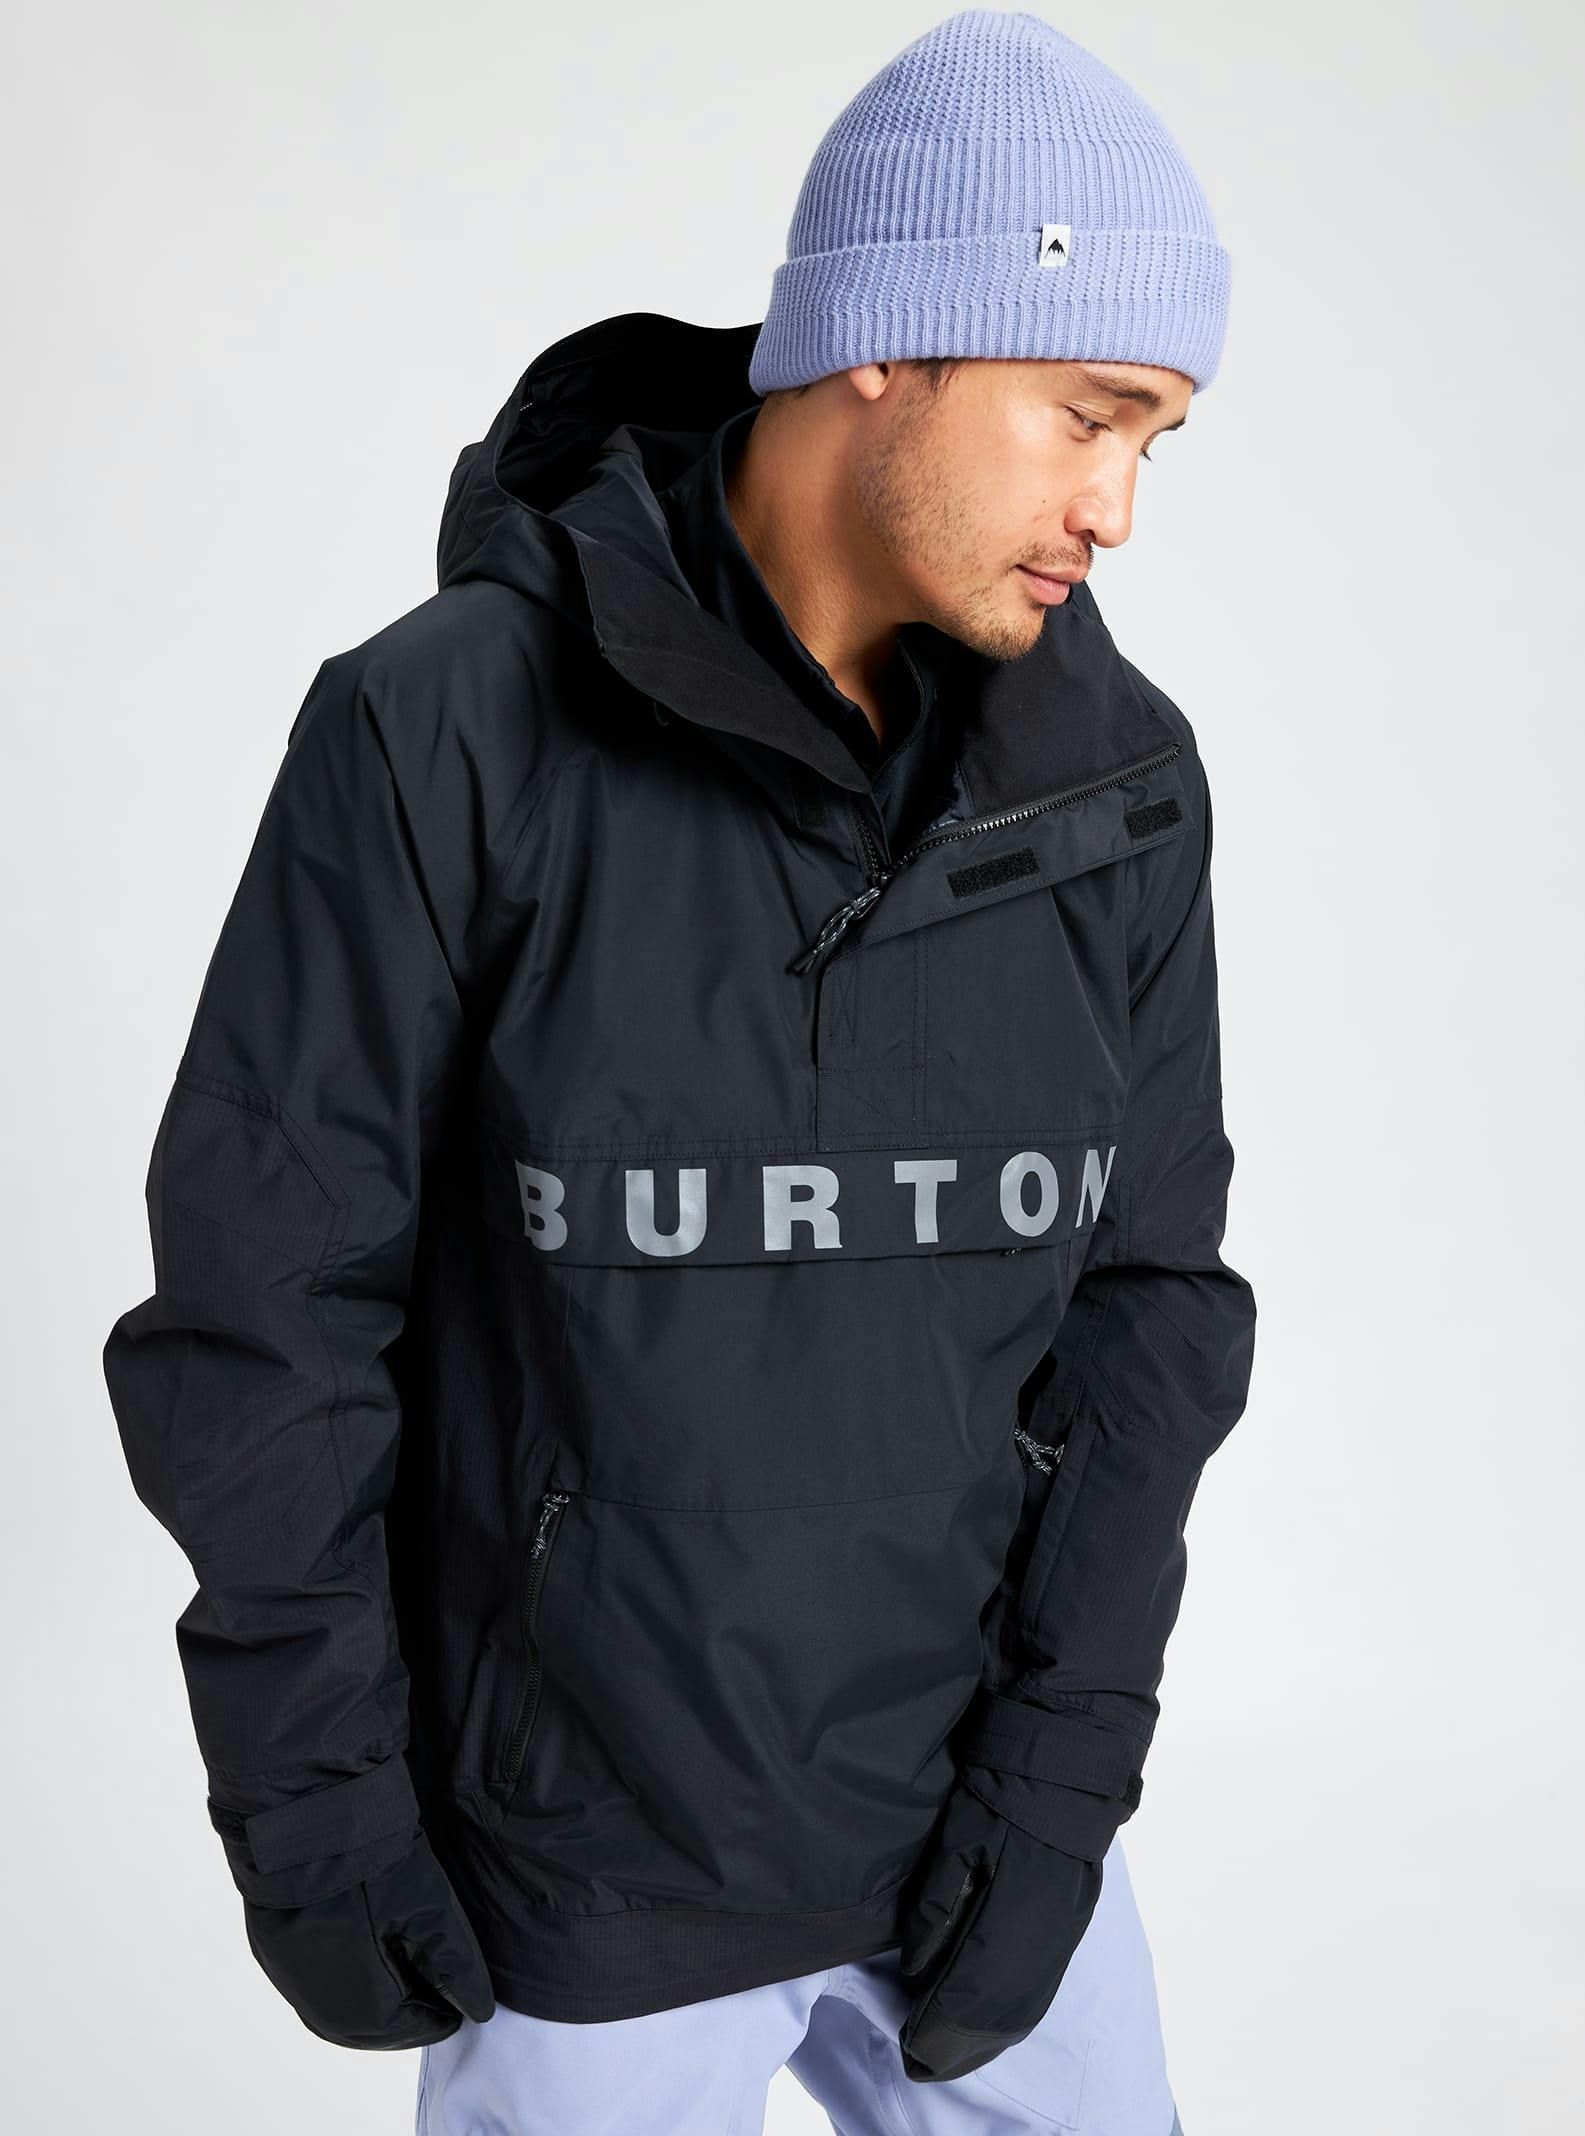 Burton Men's Frostner 2L Anorak Jacket | Curated.com